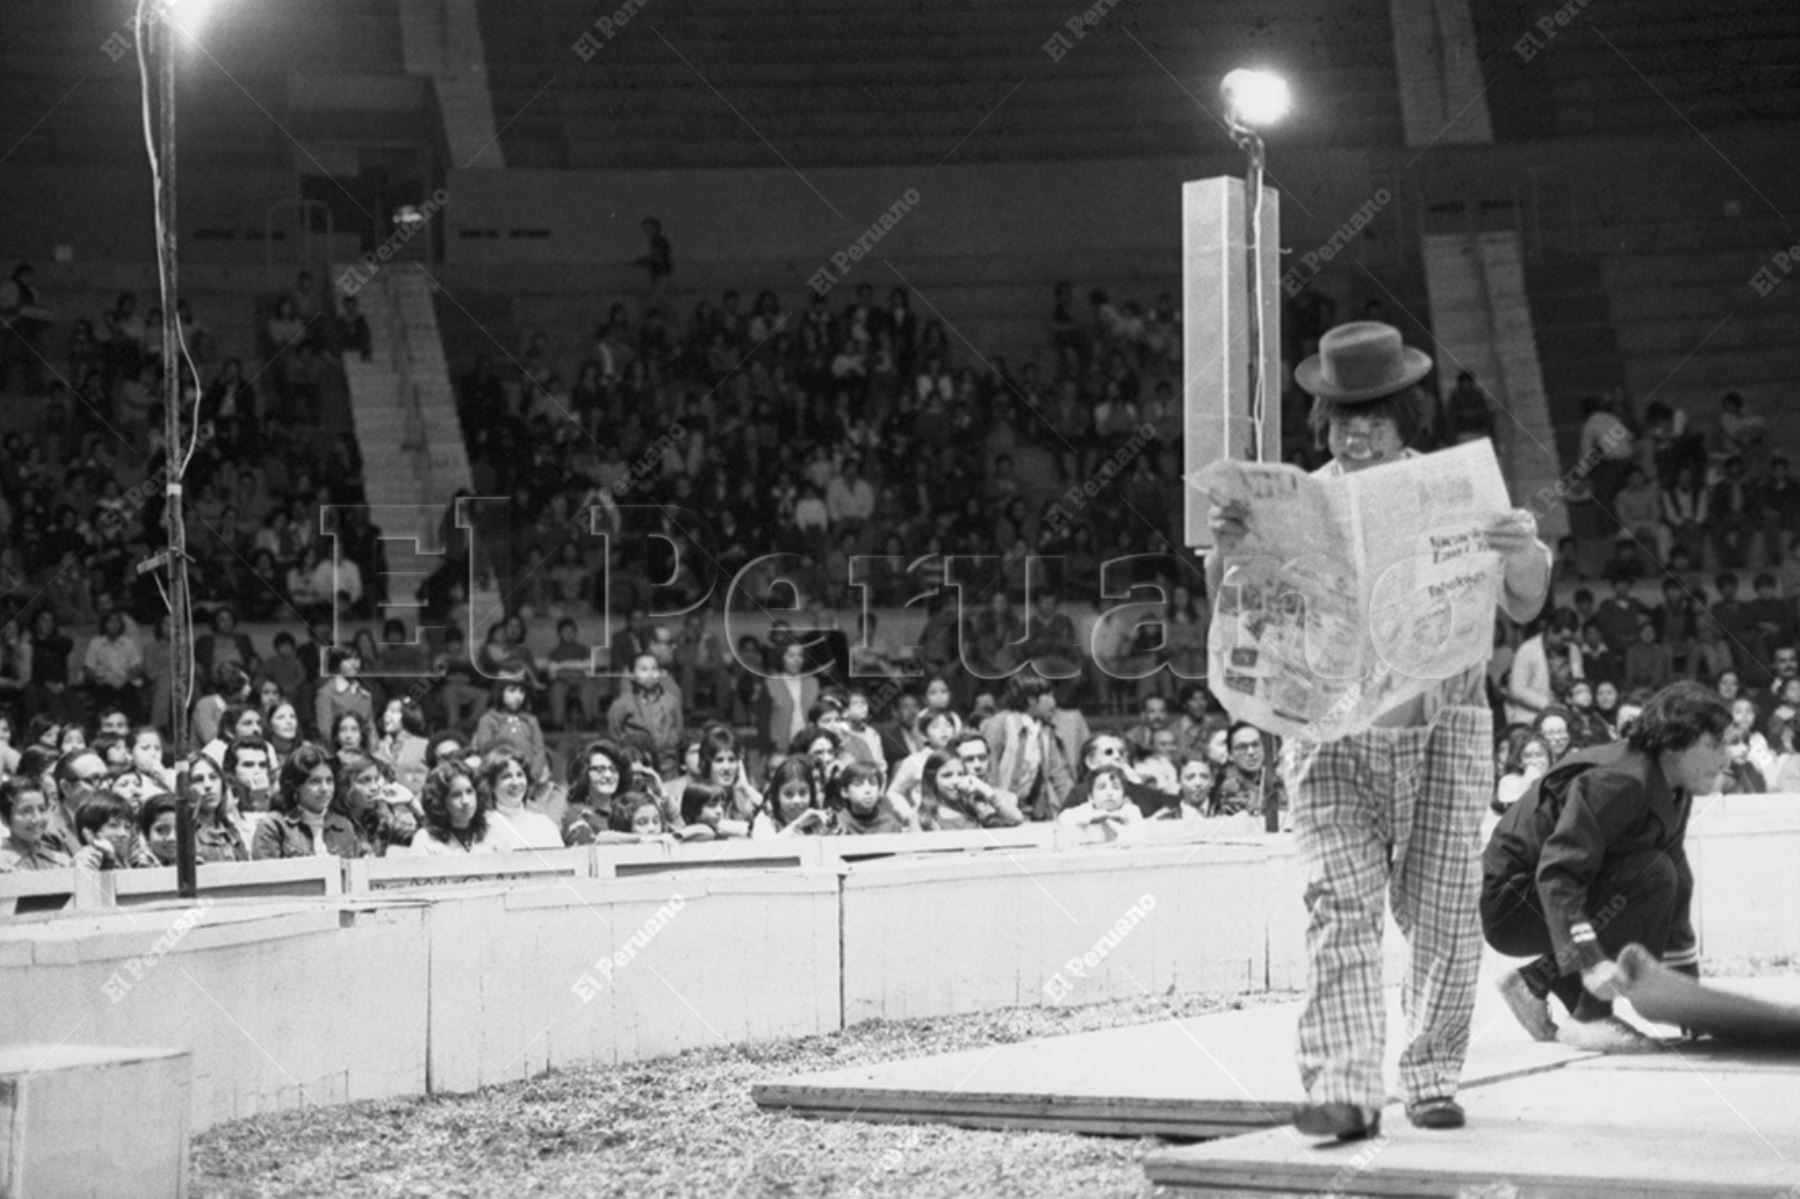 Lima - 15 julio 1976 / Una cuota adicional de risa y alegría brindaron al público los payasos del Circo Nacional de Italia en el coliseo Amauta. Foto: Archivo Histórico de El Peruano / Humberto Romaní